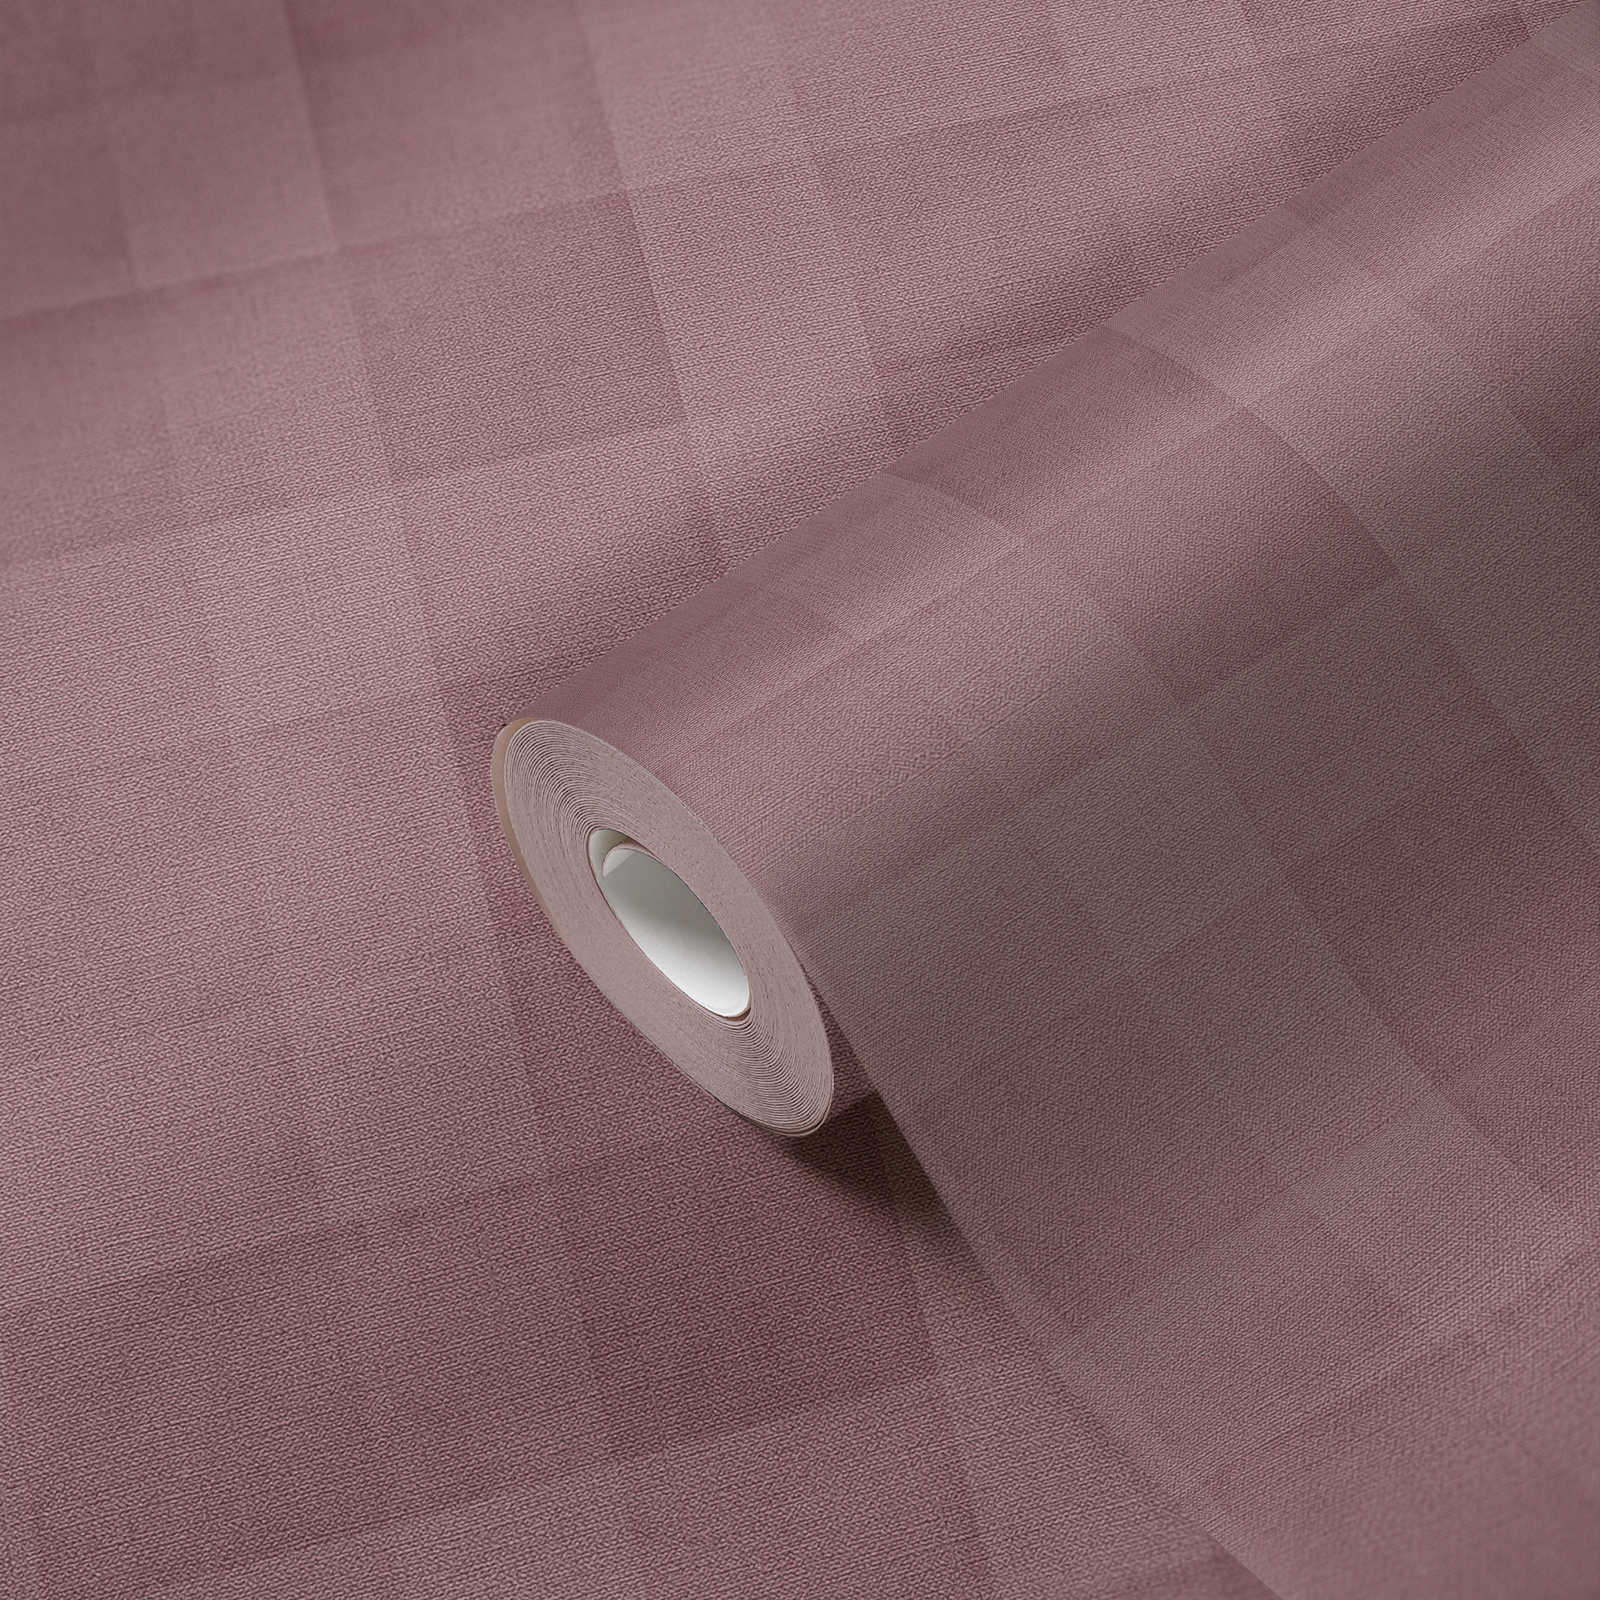             Papier peint à carreaux aspect lin sans PVC - Violet
        